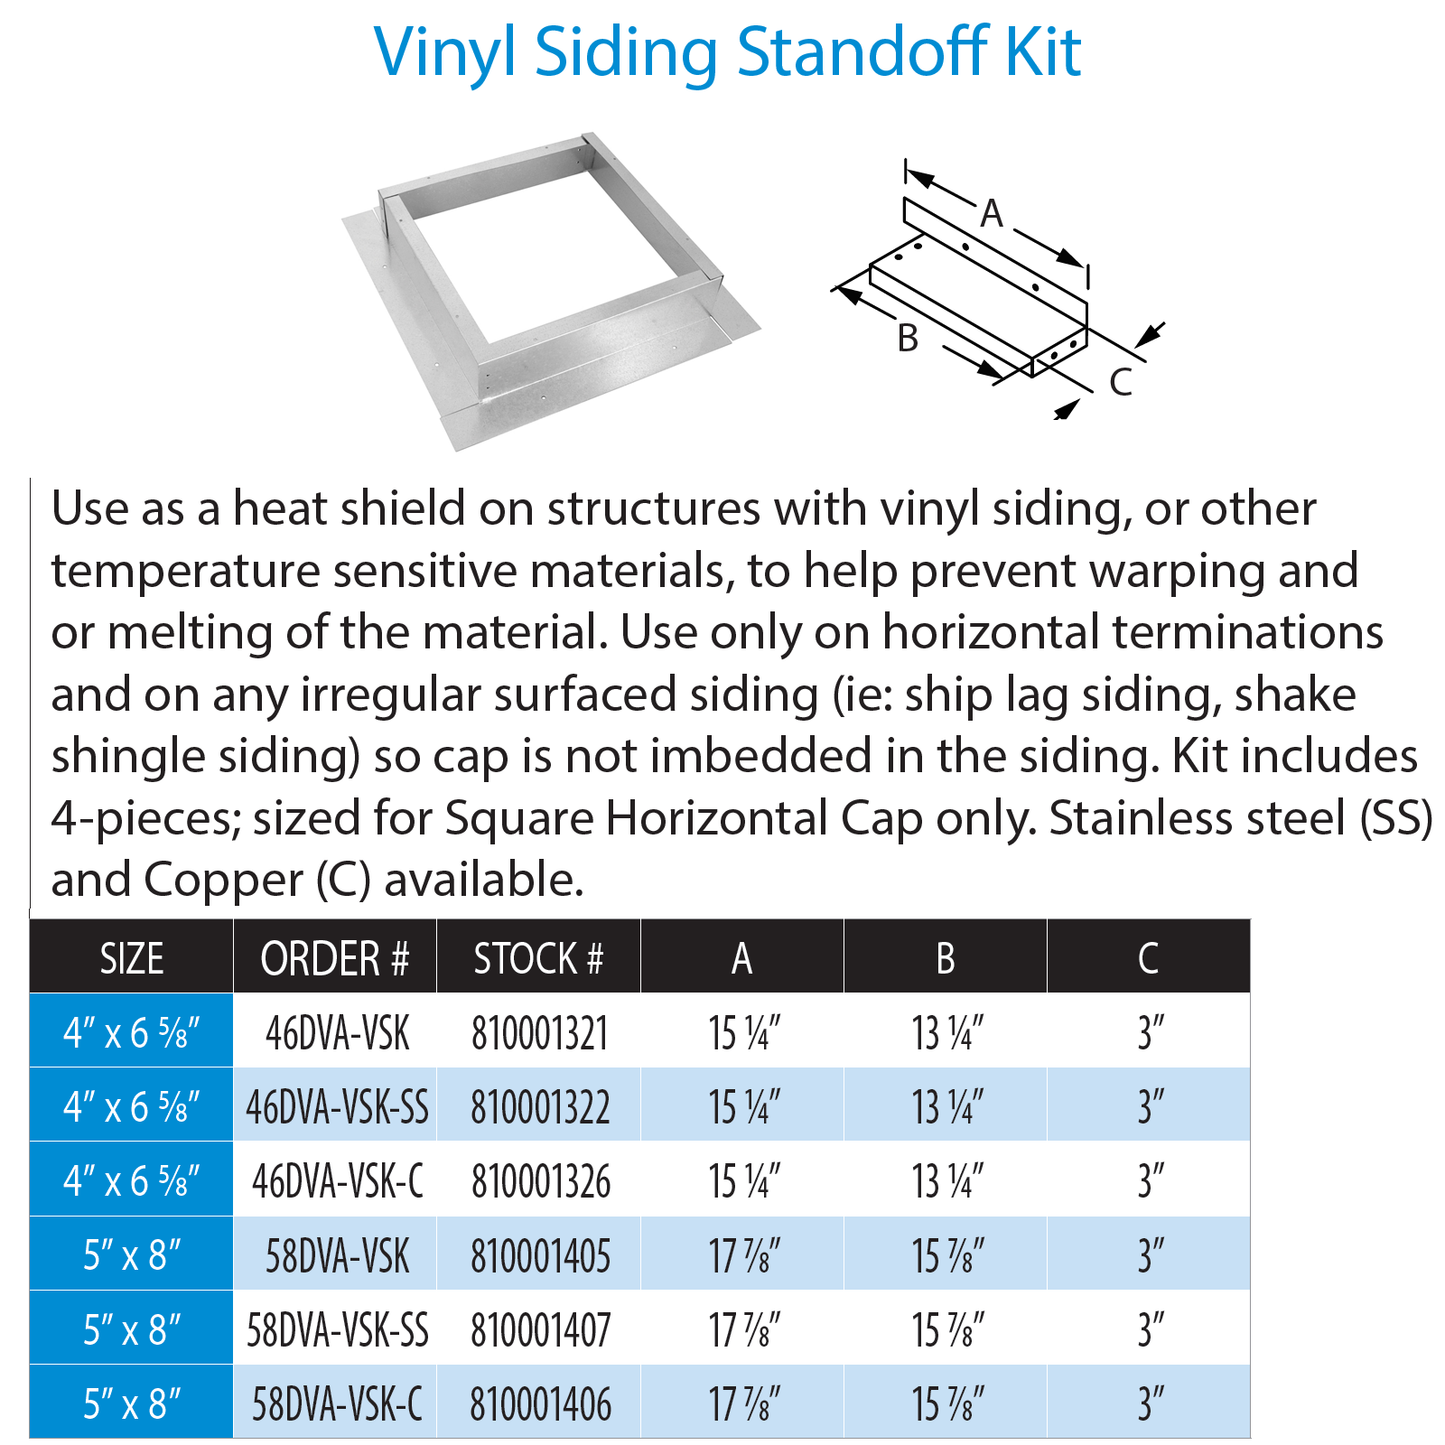 DuraVentDVP Vinyl Siding Standoff Kit Stainless Steel | 58DVA-VSK-SS